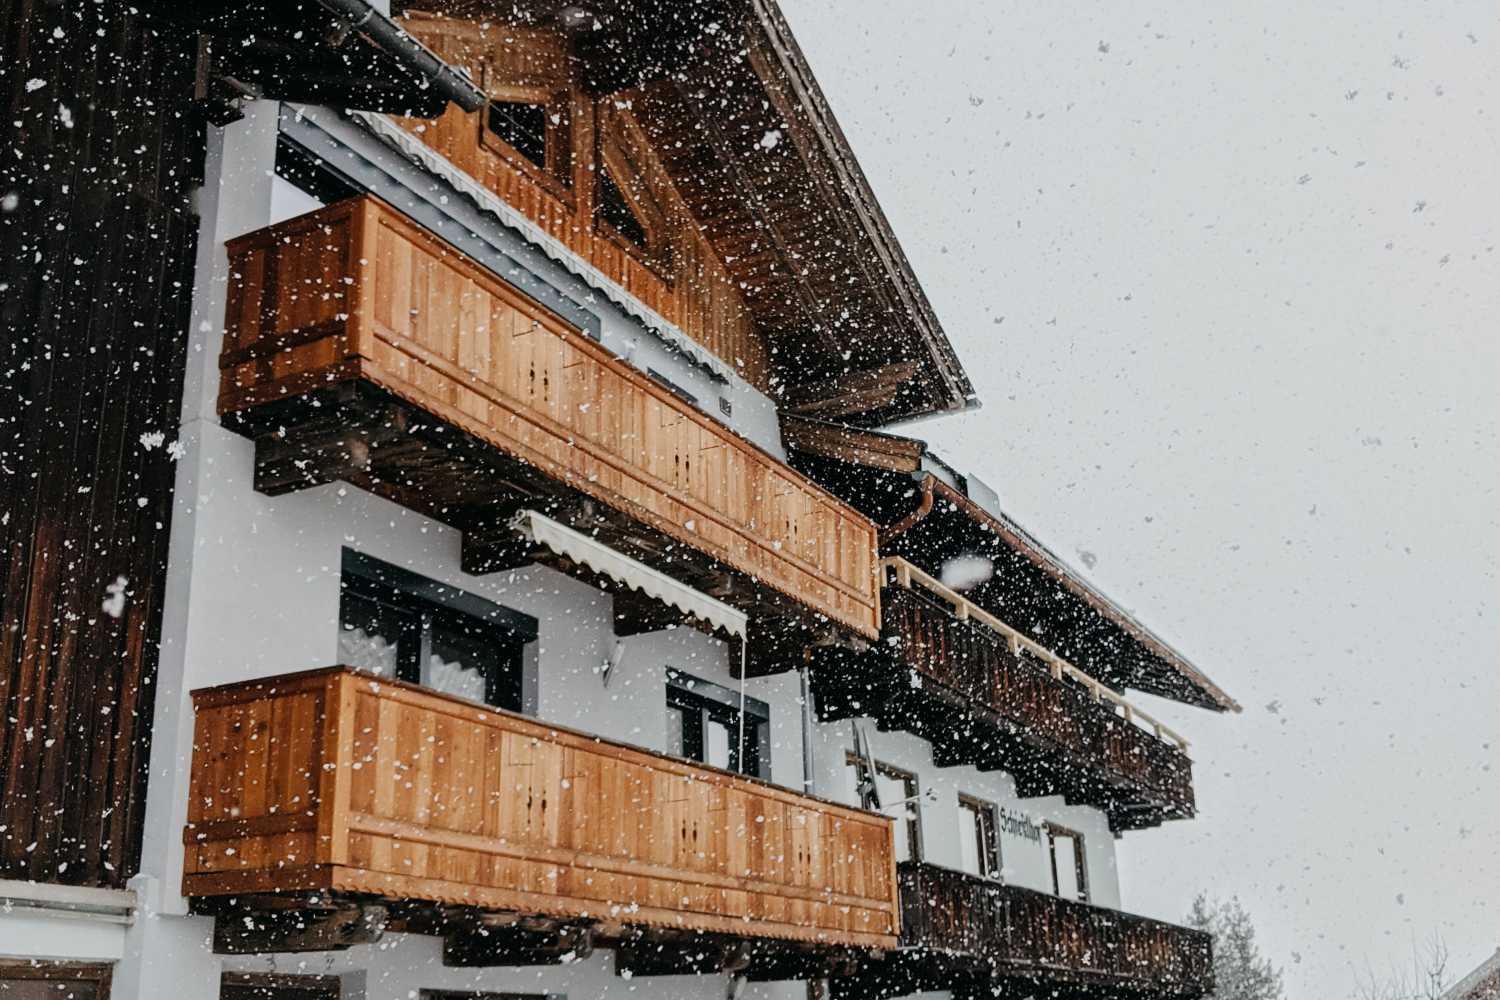 Une maison autrichienne aux panneaux de bois est embrassée par de petits flocons de neige par une journée agréable. Photo par Jara de Pexels